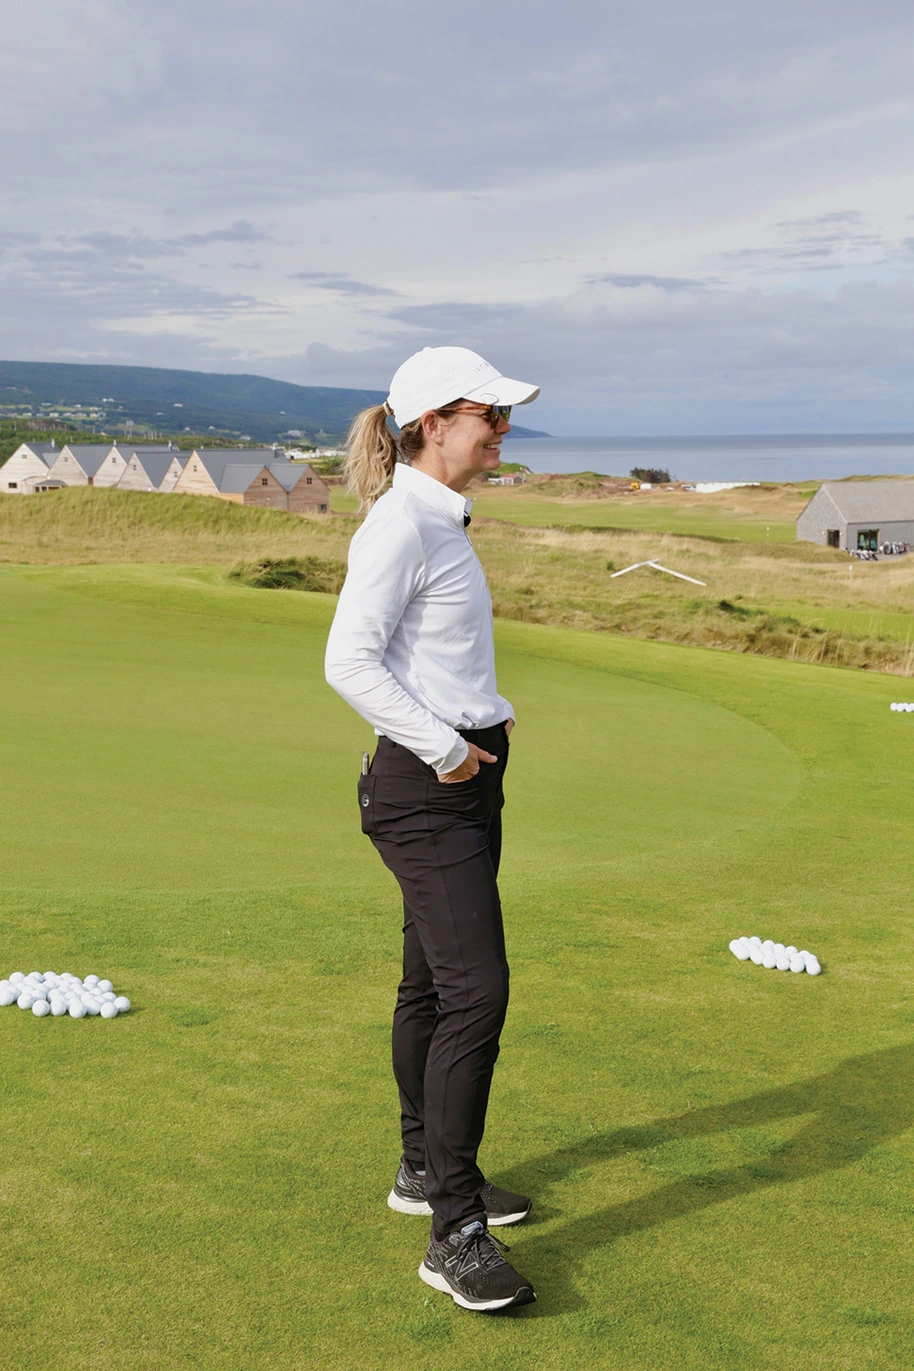 Women's Golf Apparel Still Taking Shape - SCOREGolf